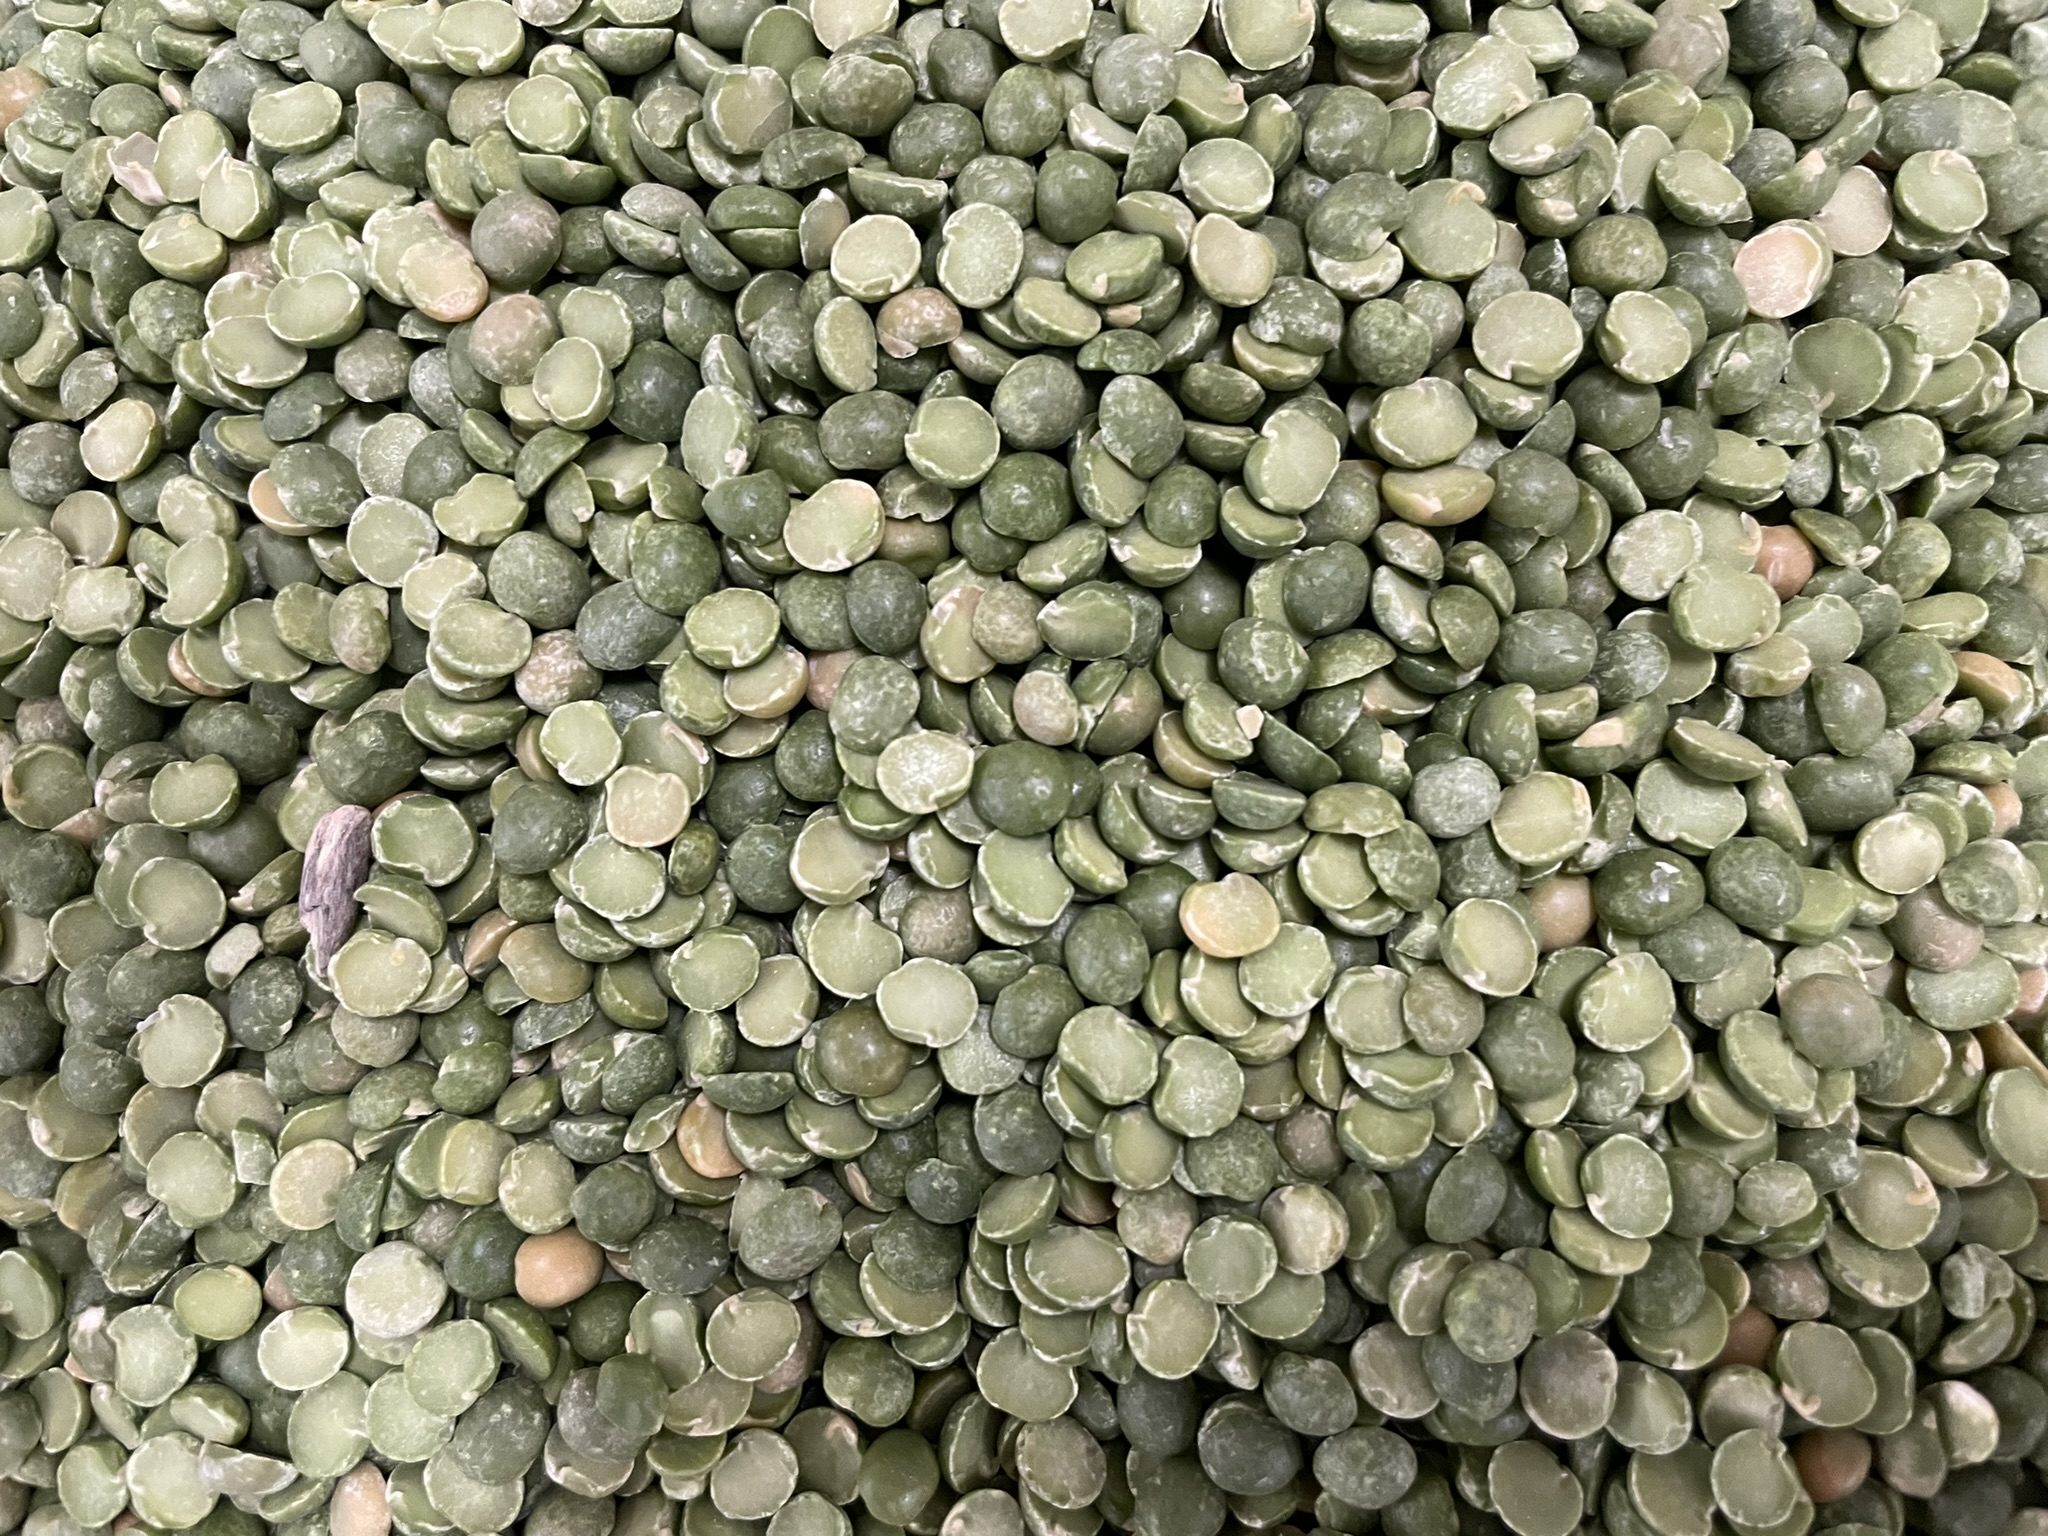 Dried split peas